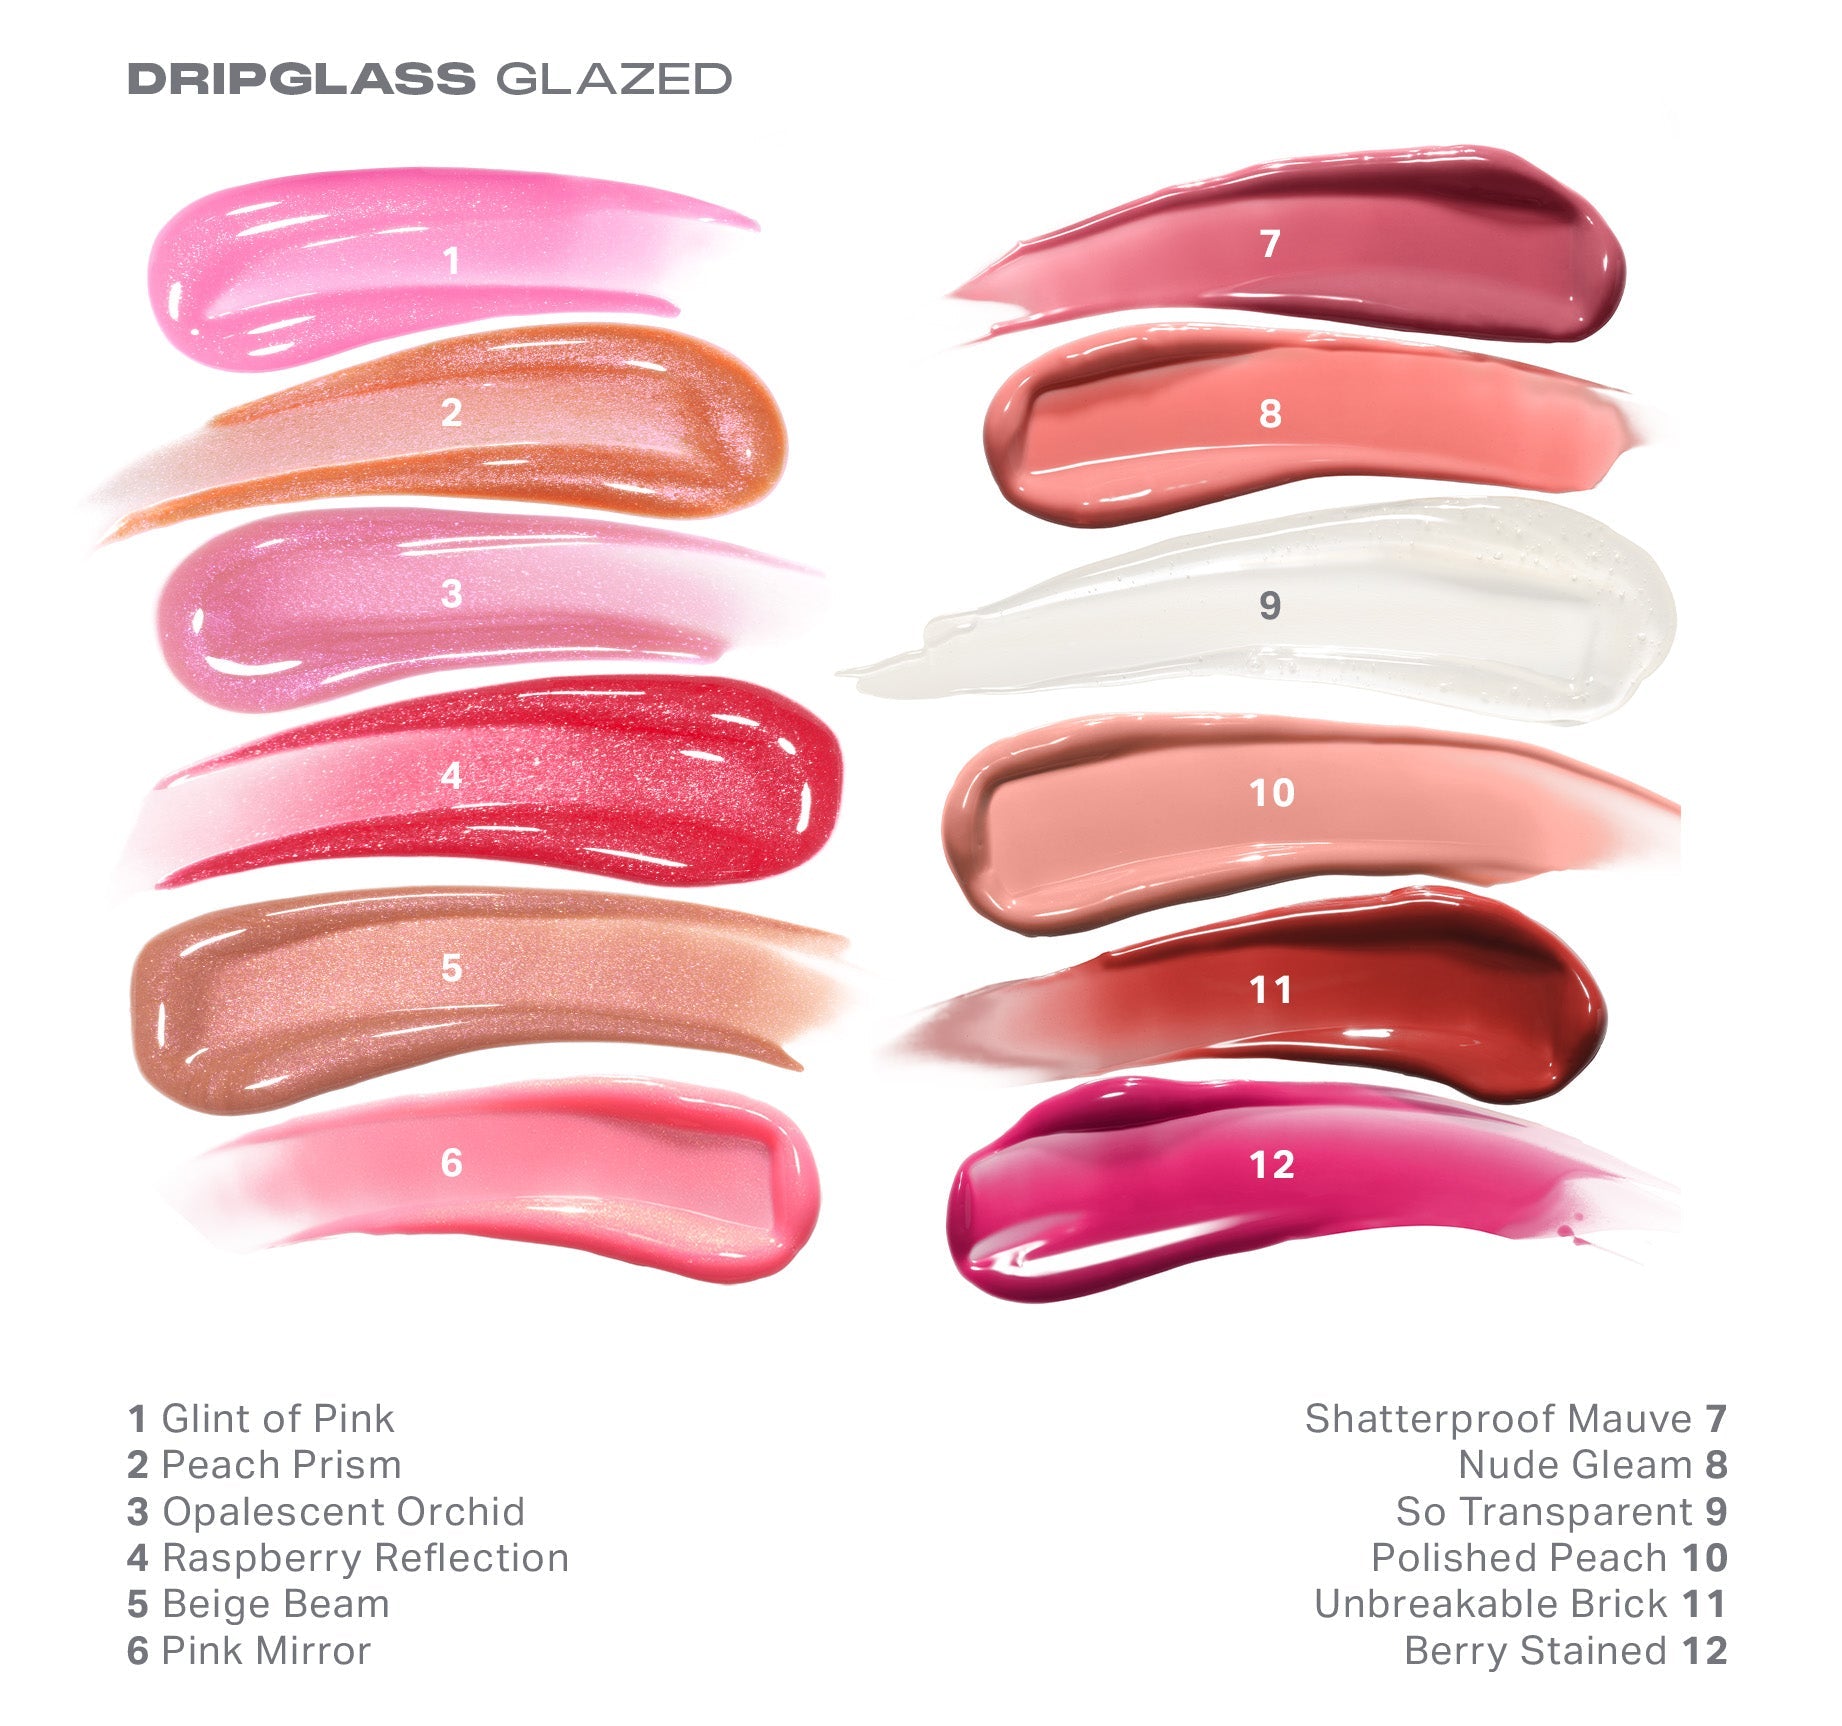 Dripglass Glazed High Shine Lip Gloss - Glint Of Pink - Image 4